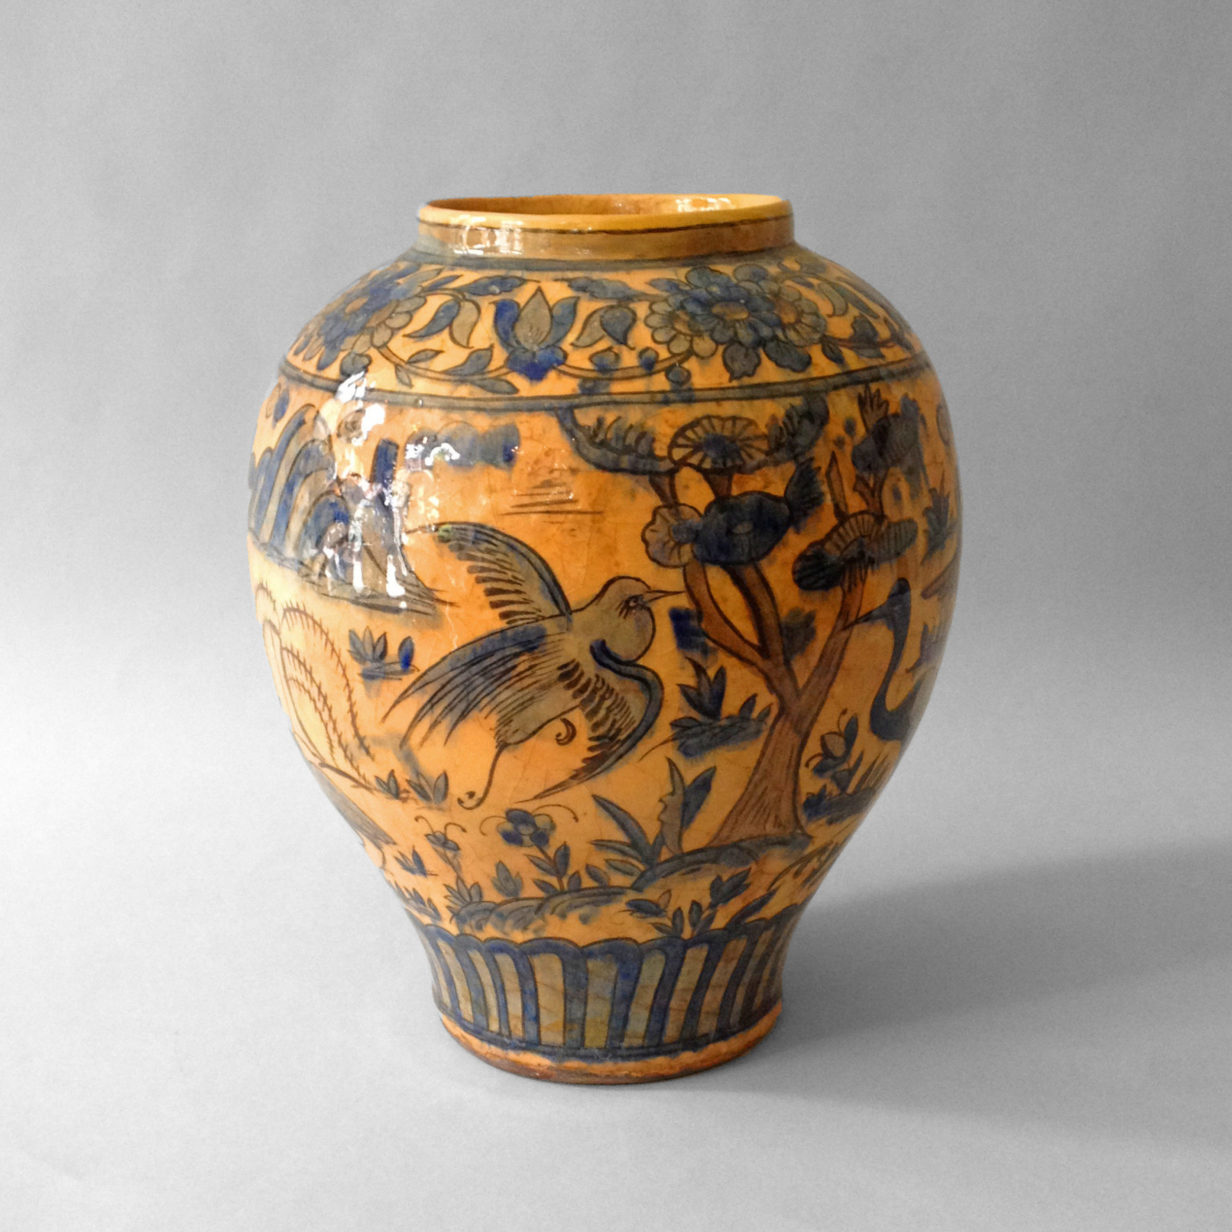 A turkish pottery vase